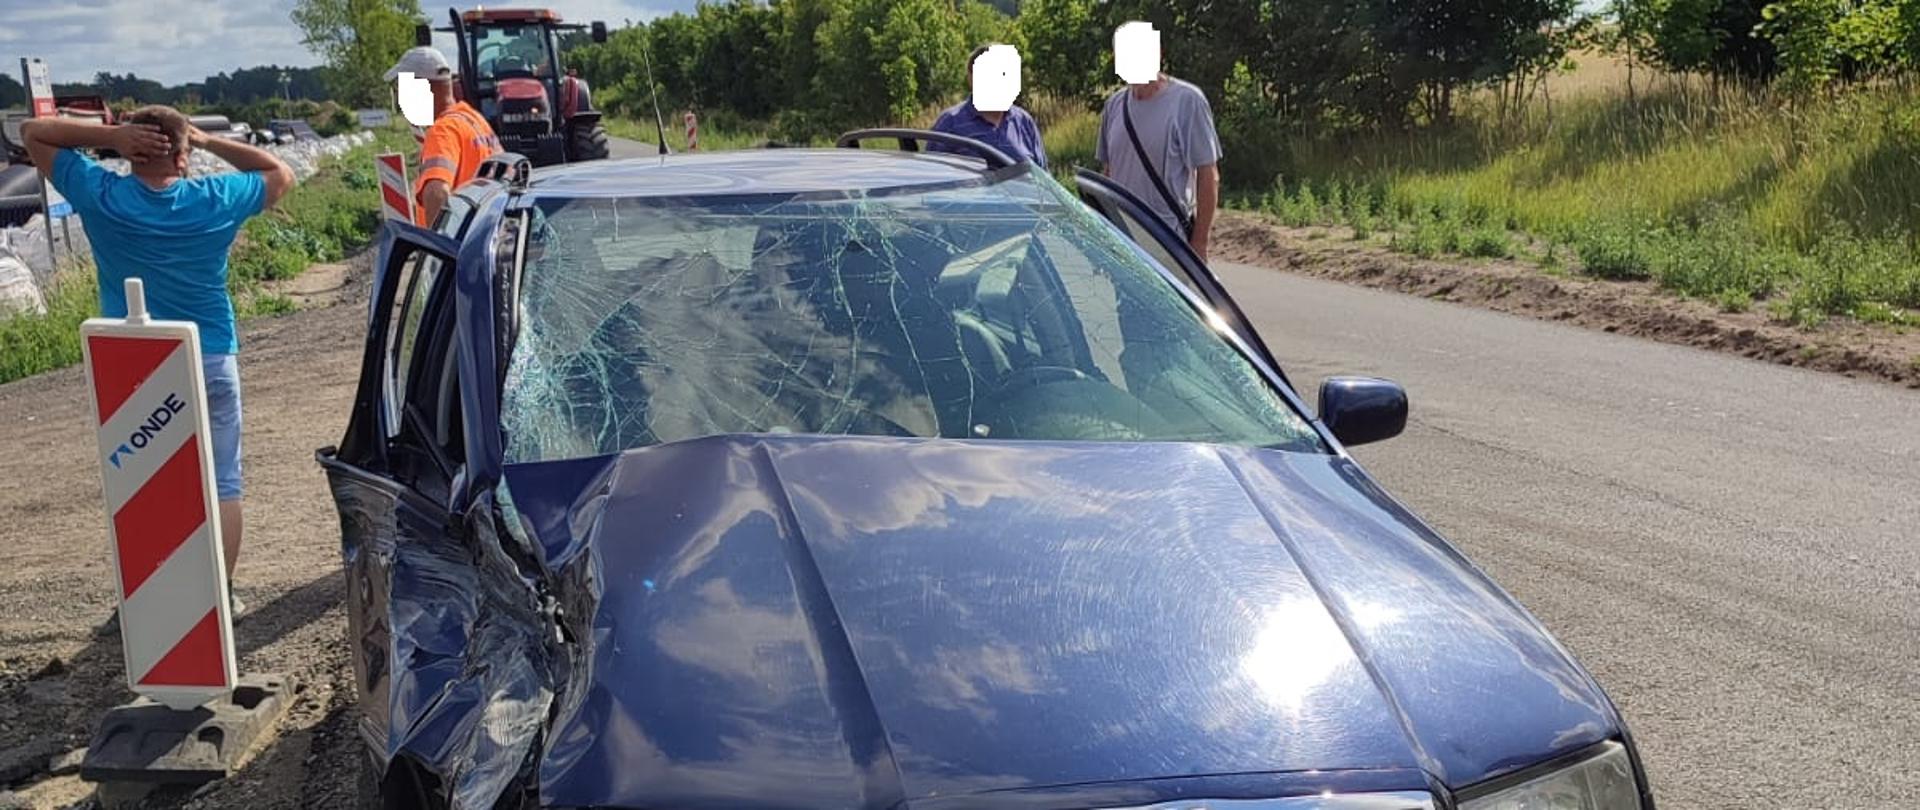 Zdjęcie przedstawia niebieski samochód osobowy z uszkodzonym lewym bokiem po kolizji z ciągnikiem rolniczym, który znajduje się za nim. Obok auta stoją ludzie.